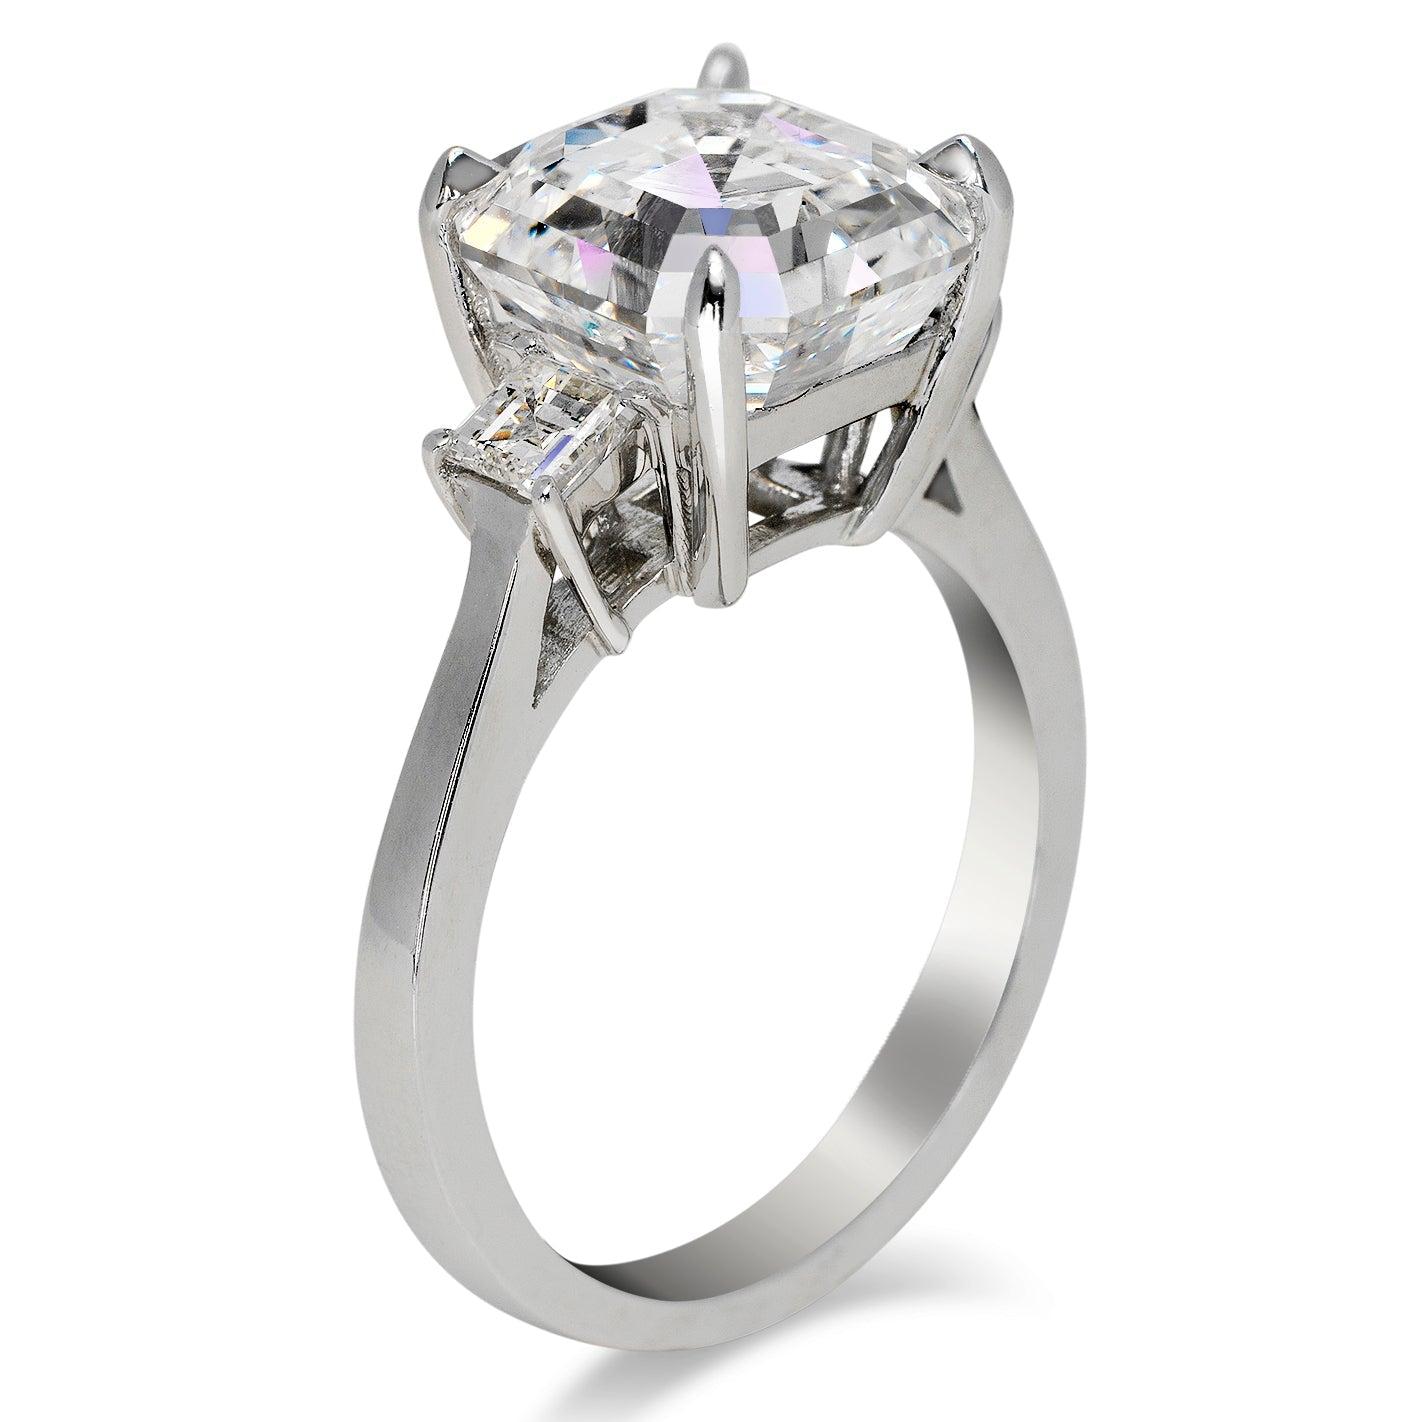 6 carat asscher cut diamond ring